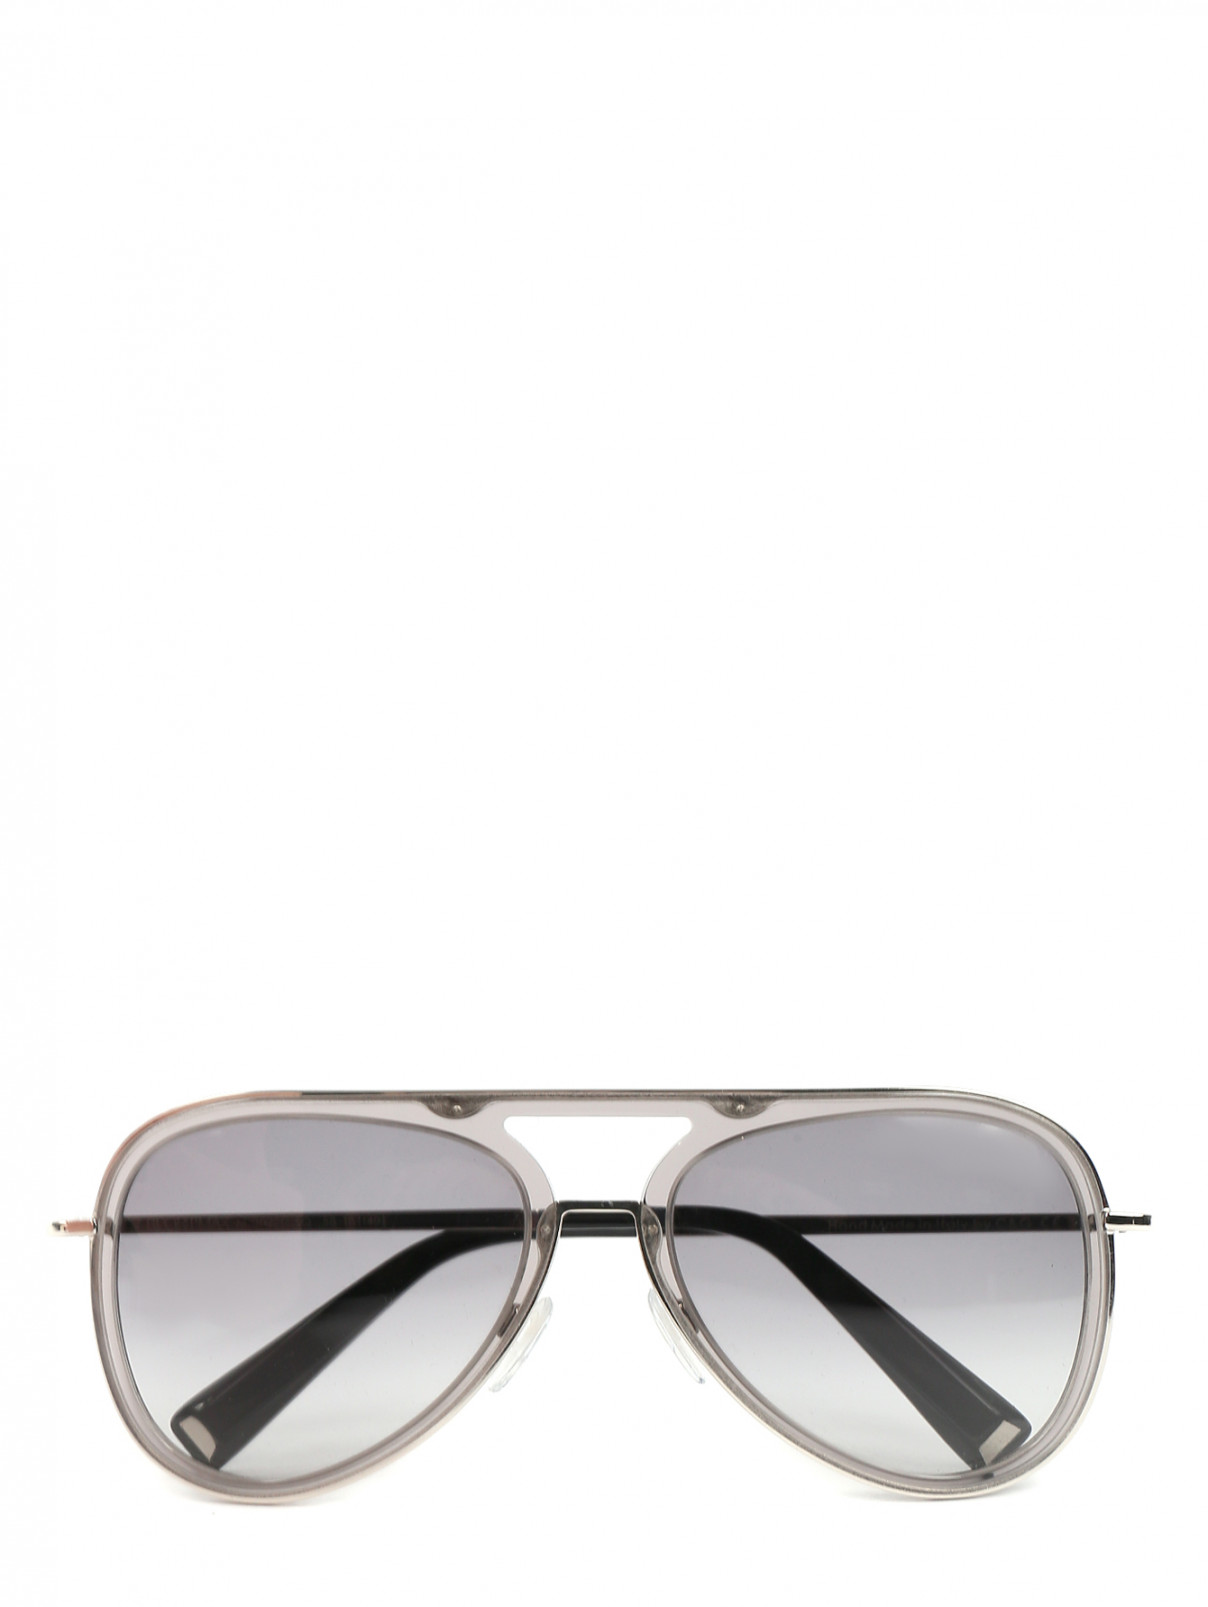 Солнцезащитные очки в оправе из пластика и металла Max Mara  –  Общий вид  – Цвет:  Серый